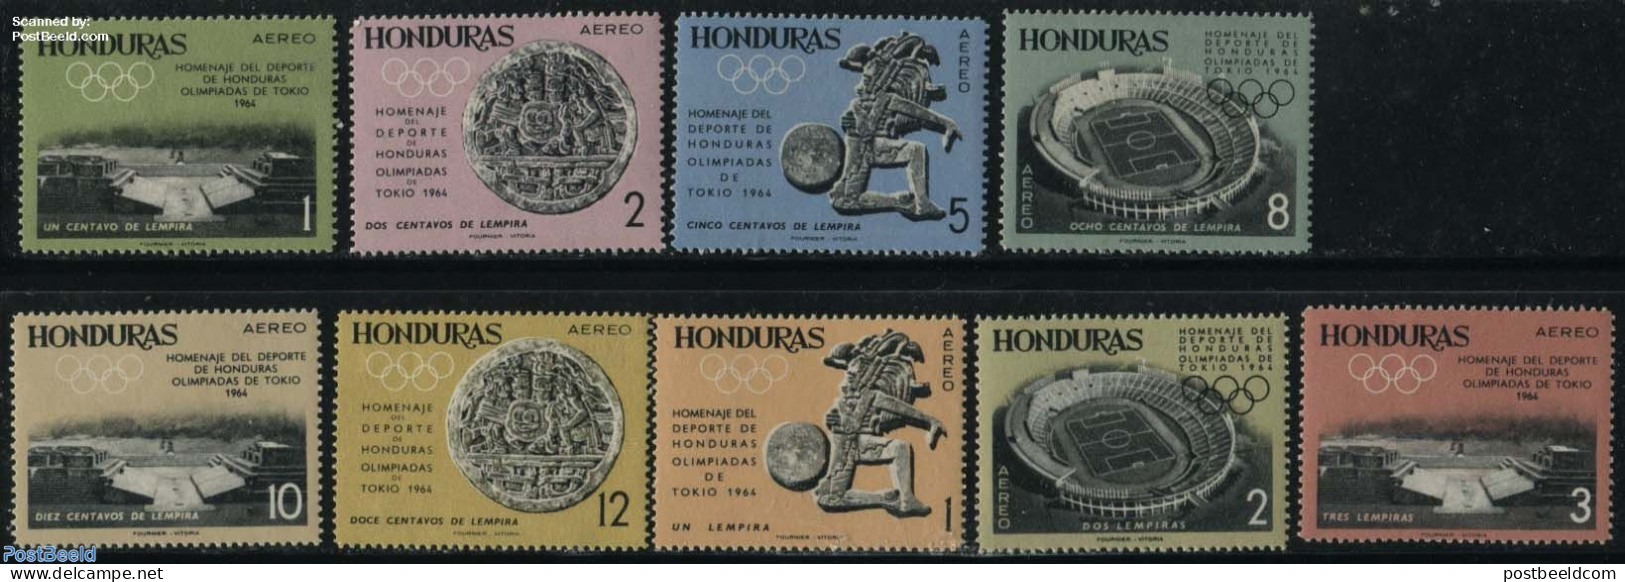 Honduras 1964 Olympic Games 9v, Mint NH, Sport - Olympic Games - Honduras